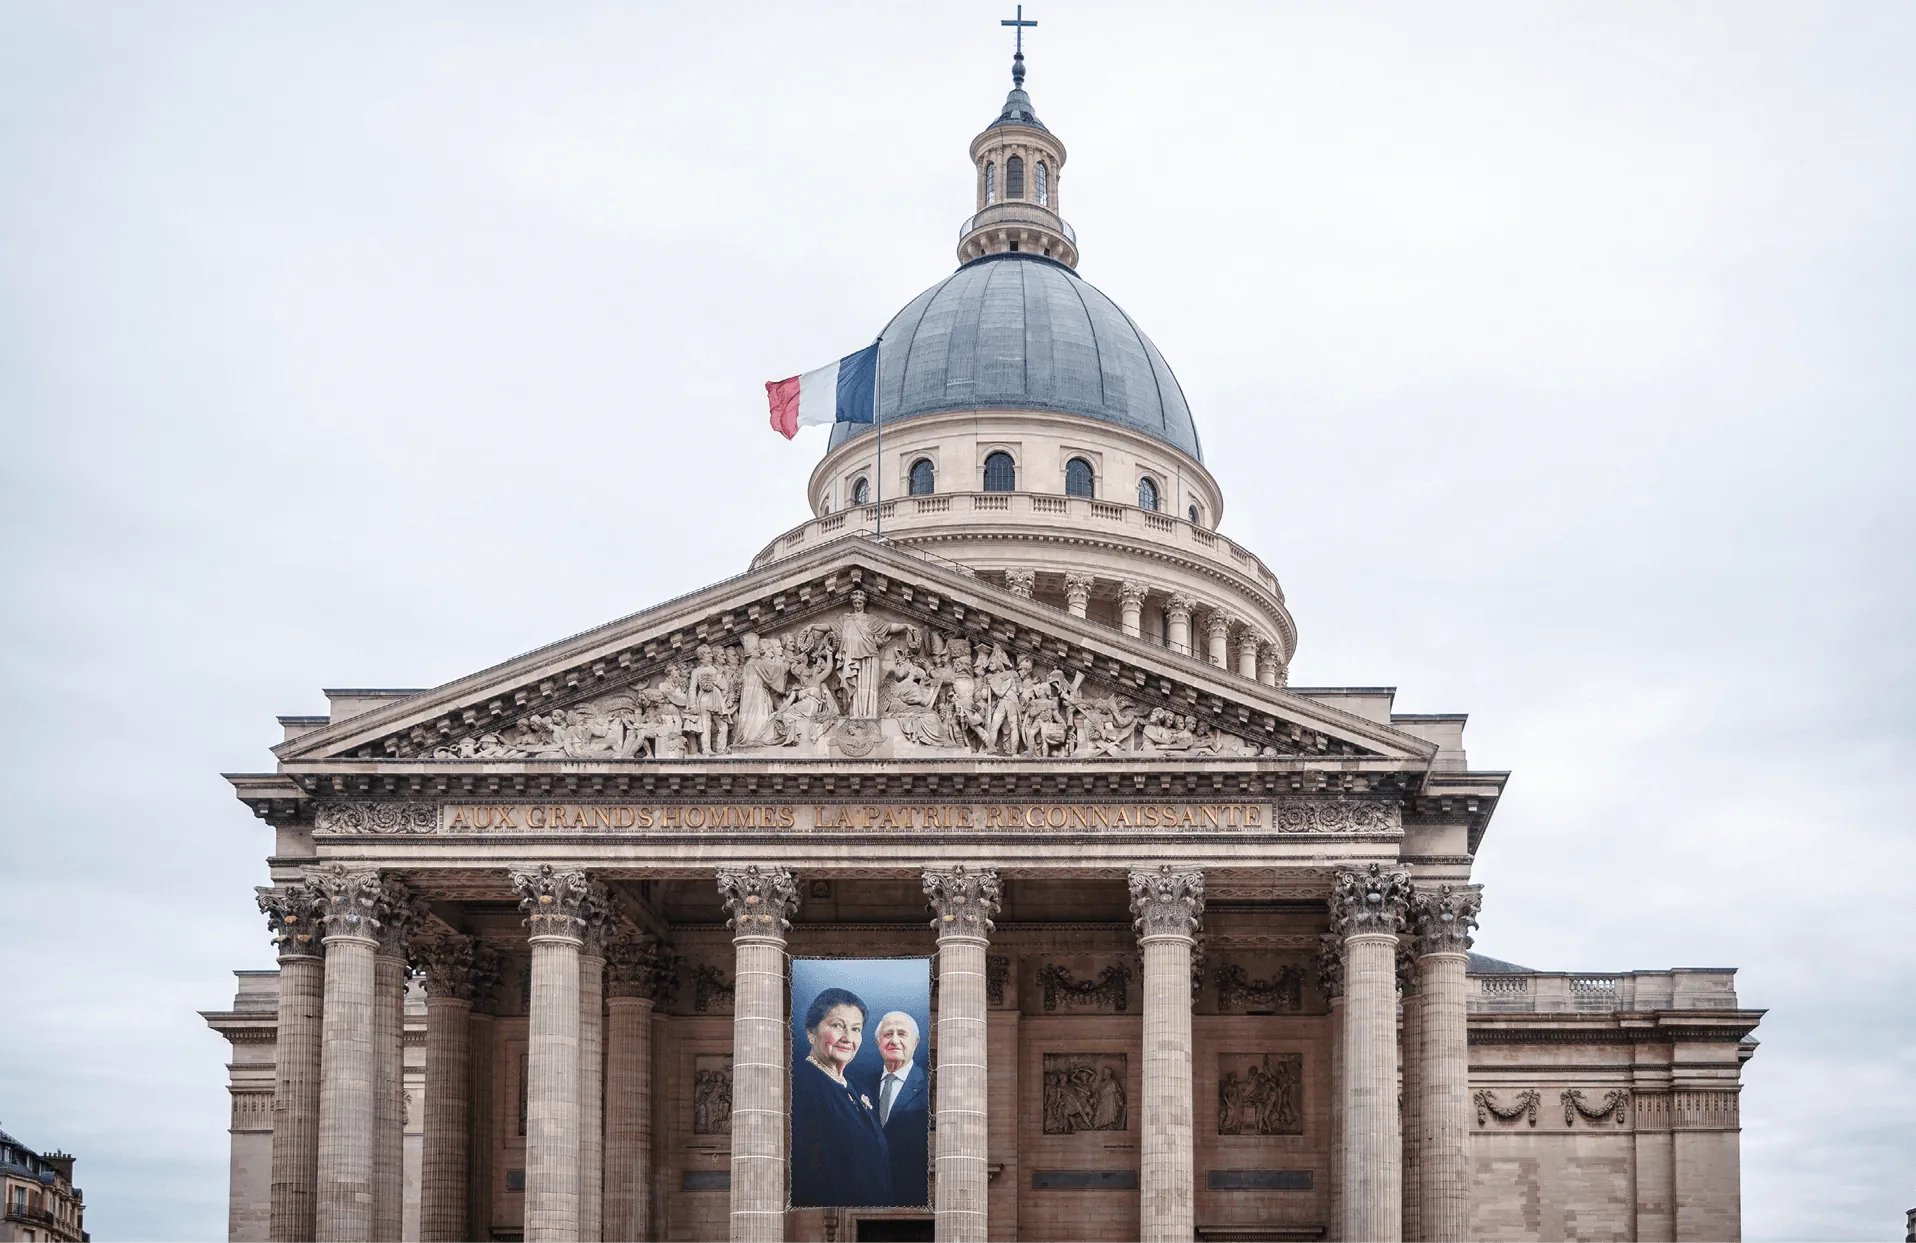 Les portraits de Simone Veil et de son époux sous le fronton du Panthéon, août 2018.